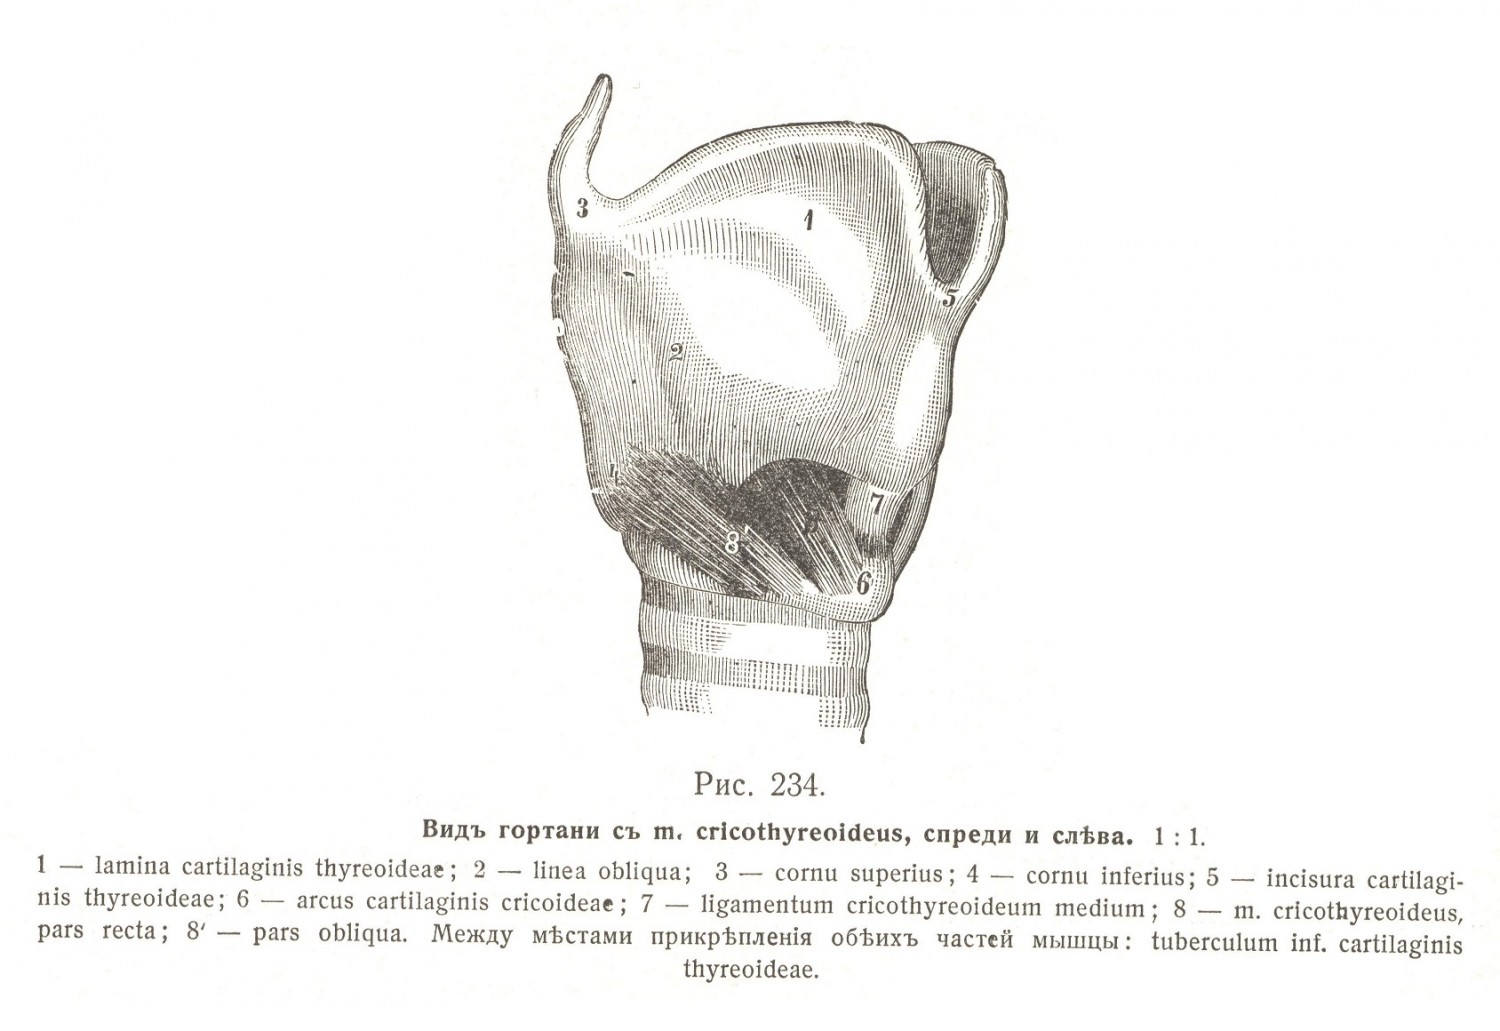 Вид гортани с М. cricothyreoideus слева и справа